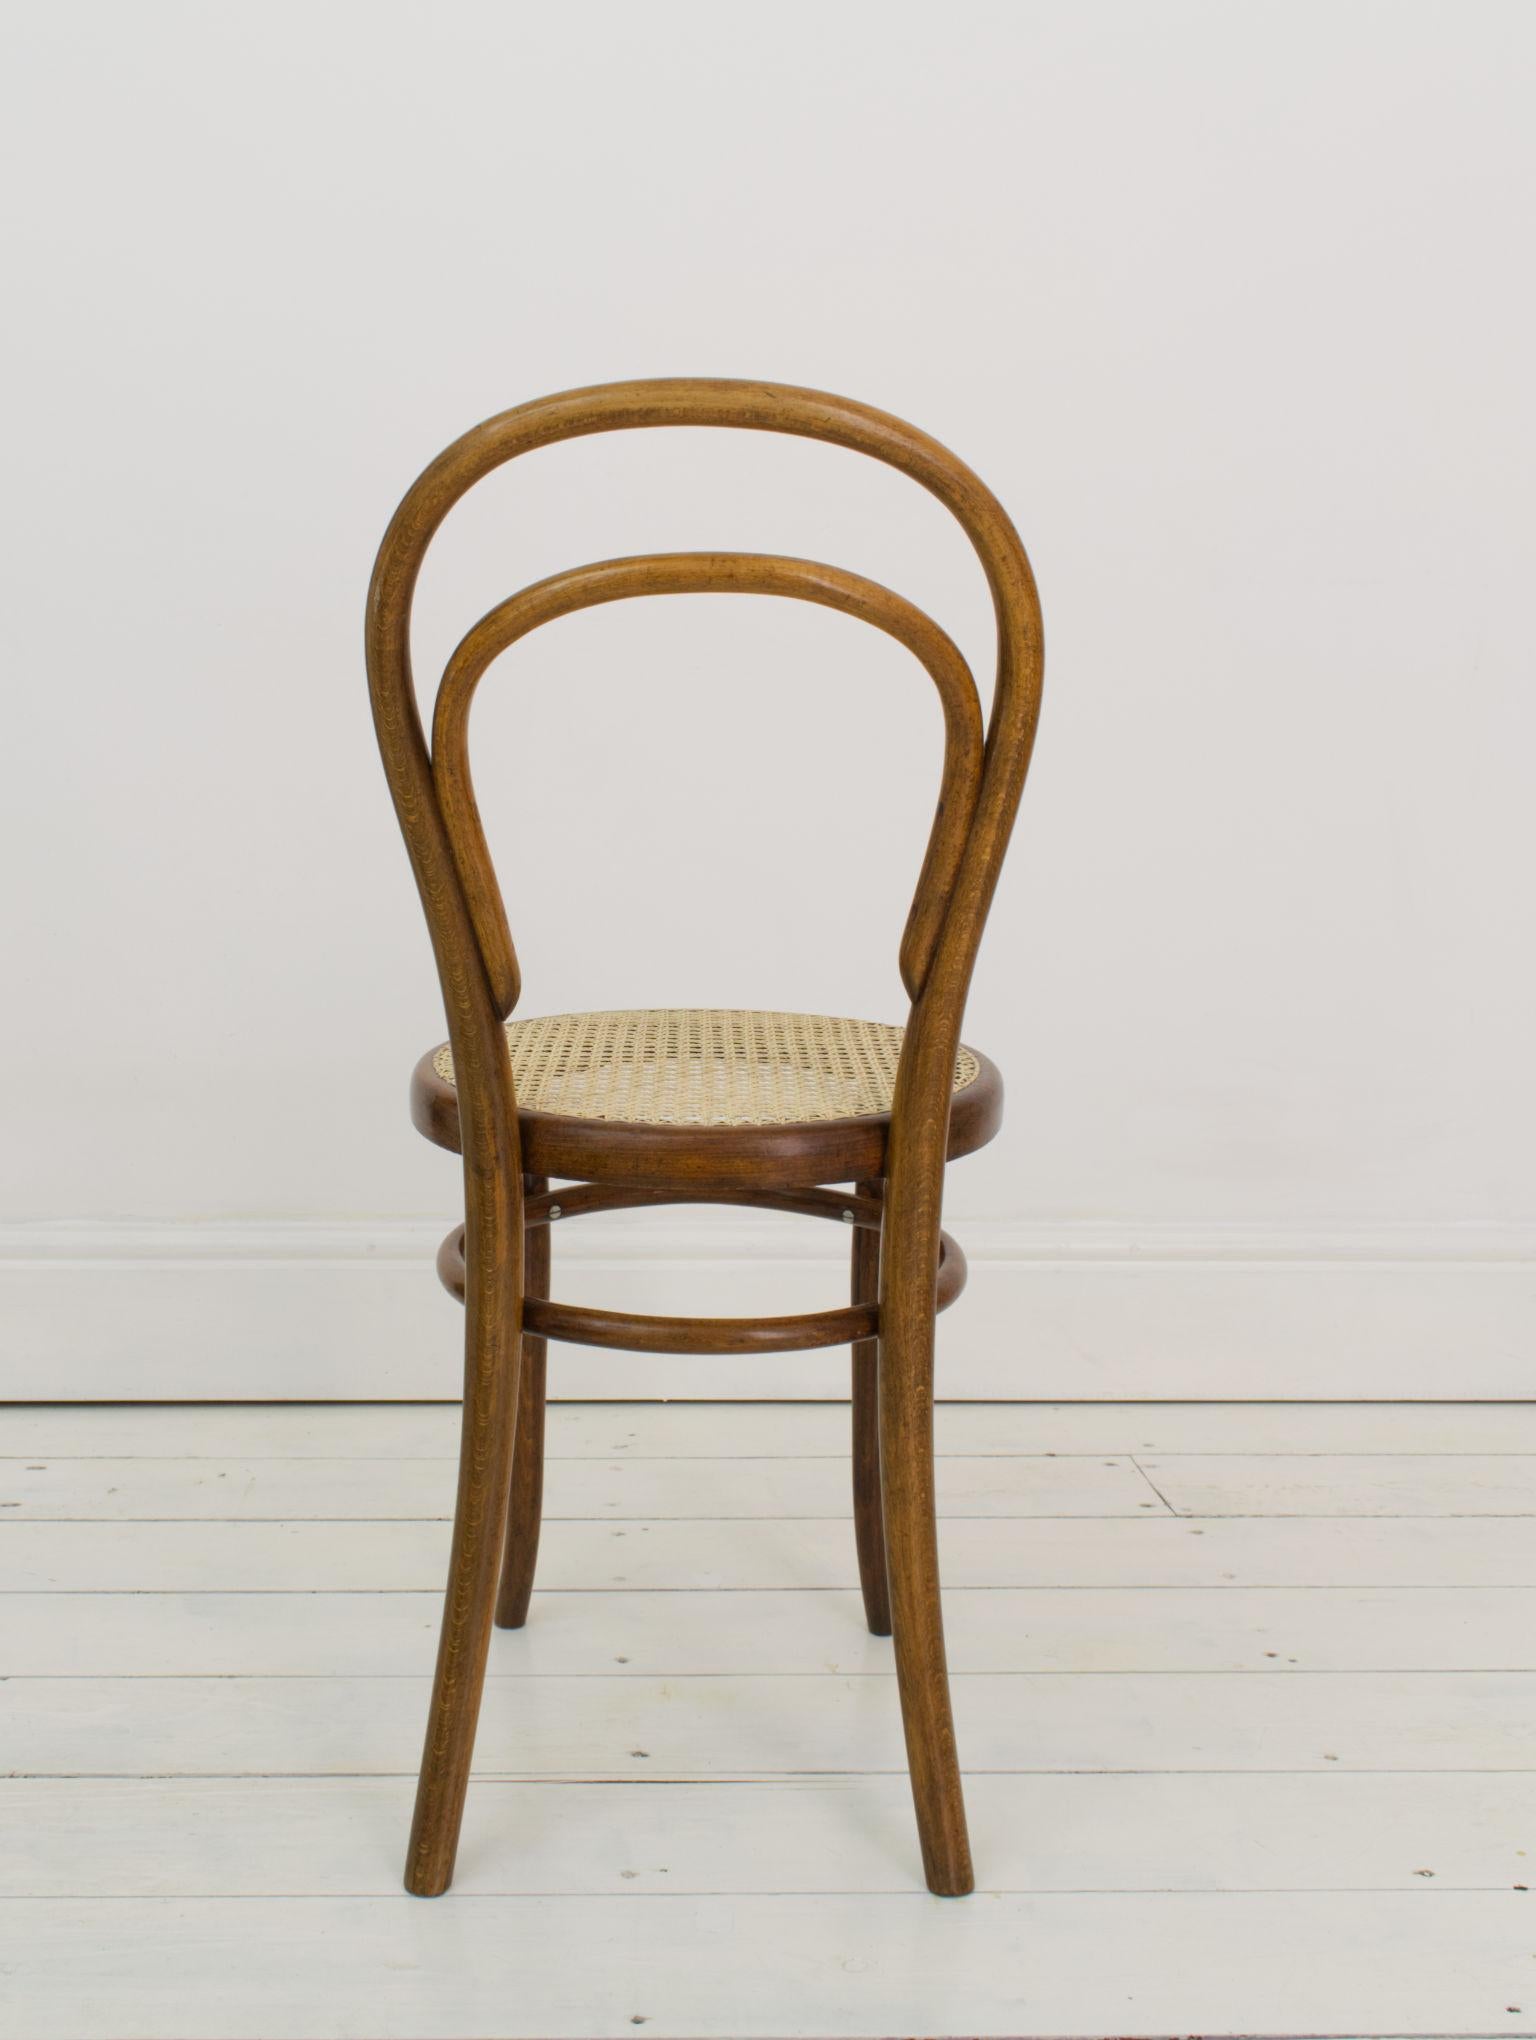 Un exemple précoce de la chaise la plus célèbre de Thonet, avec un Label original la datant entre 1890-1910, cette chaise est aussi mystérieusement marquée A.I.C. le long du dossier du siège, bien que nous n'ayons pas été en mesure de déchiffrer les